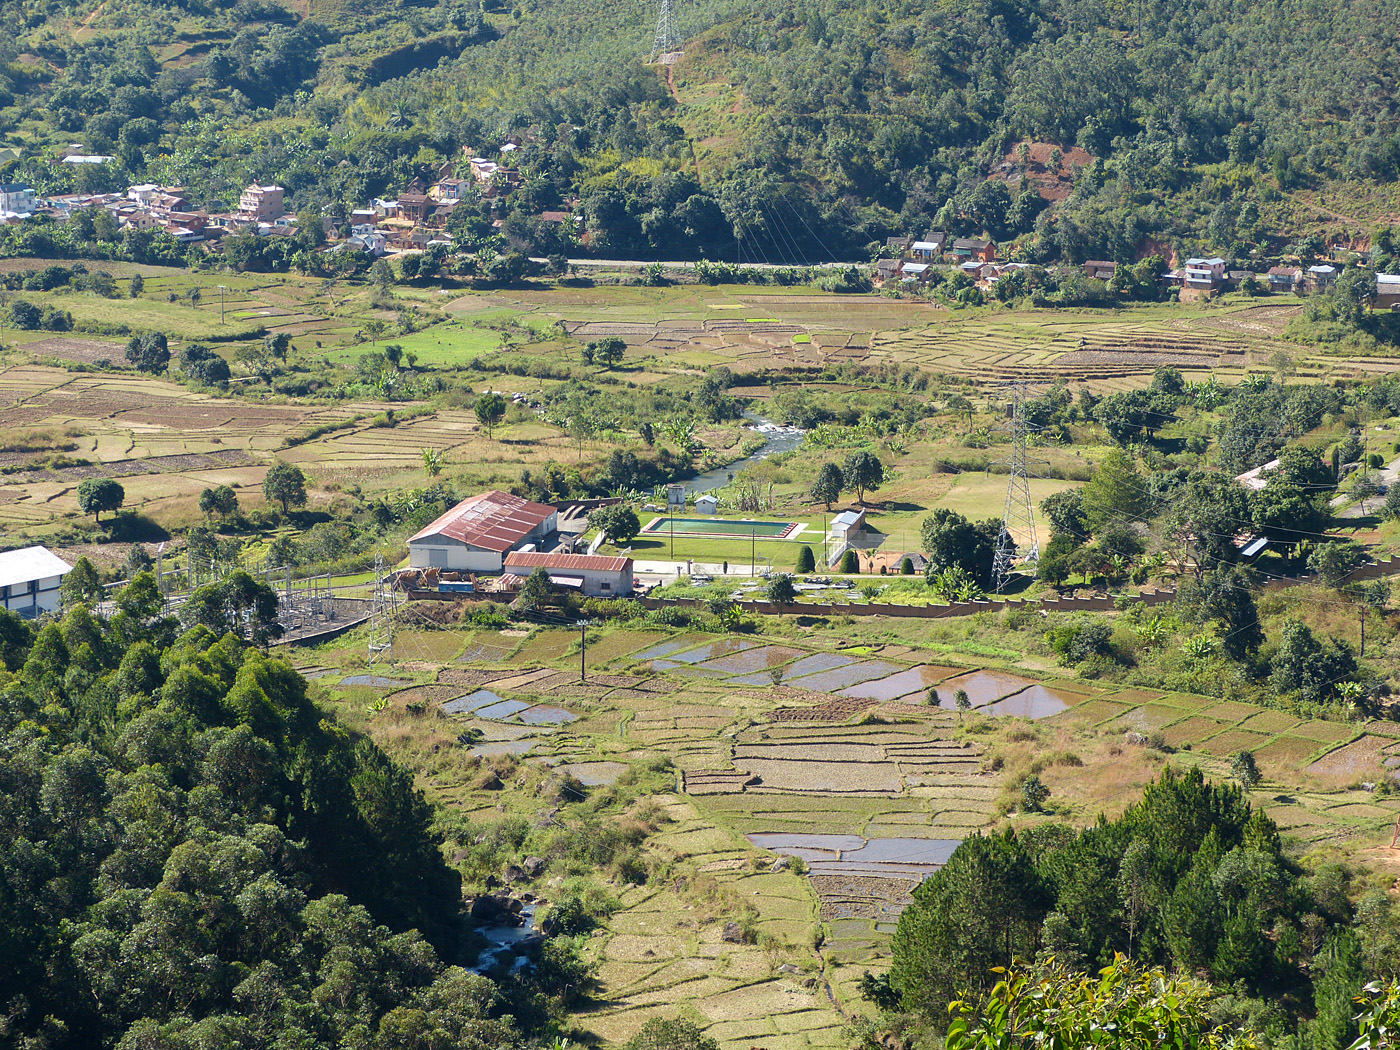 Highland Scenery near Antananarivo